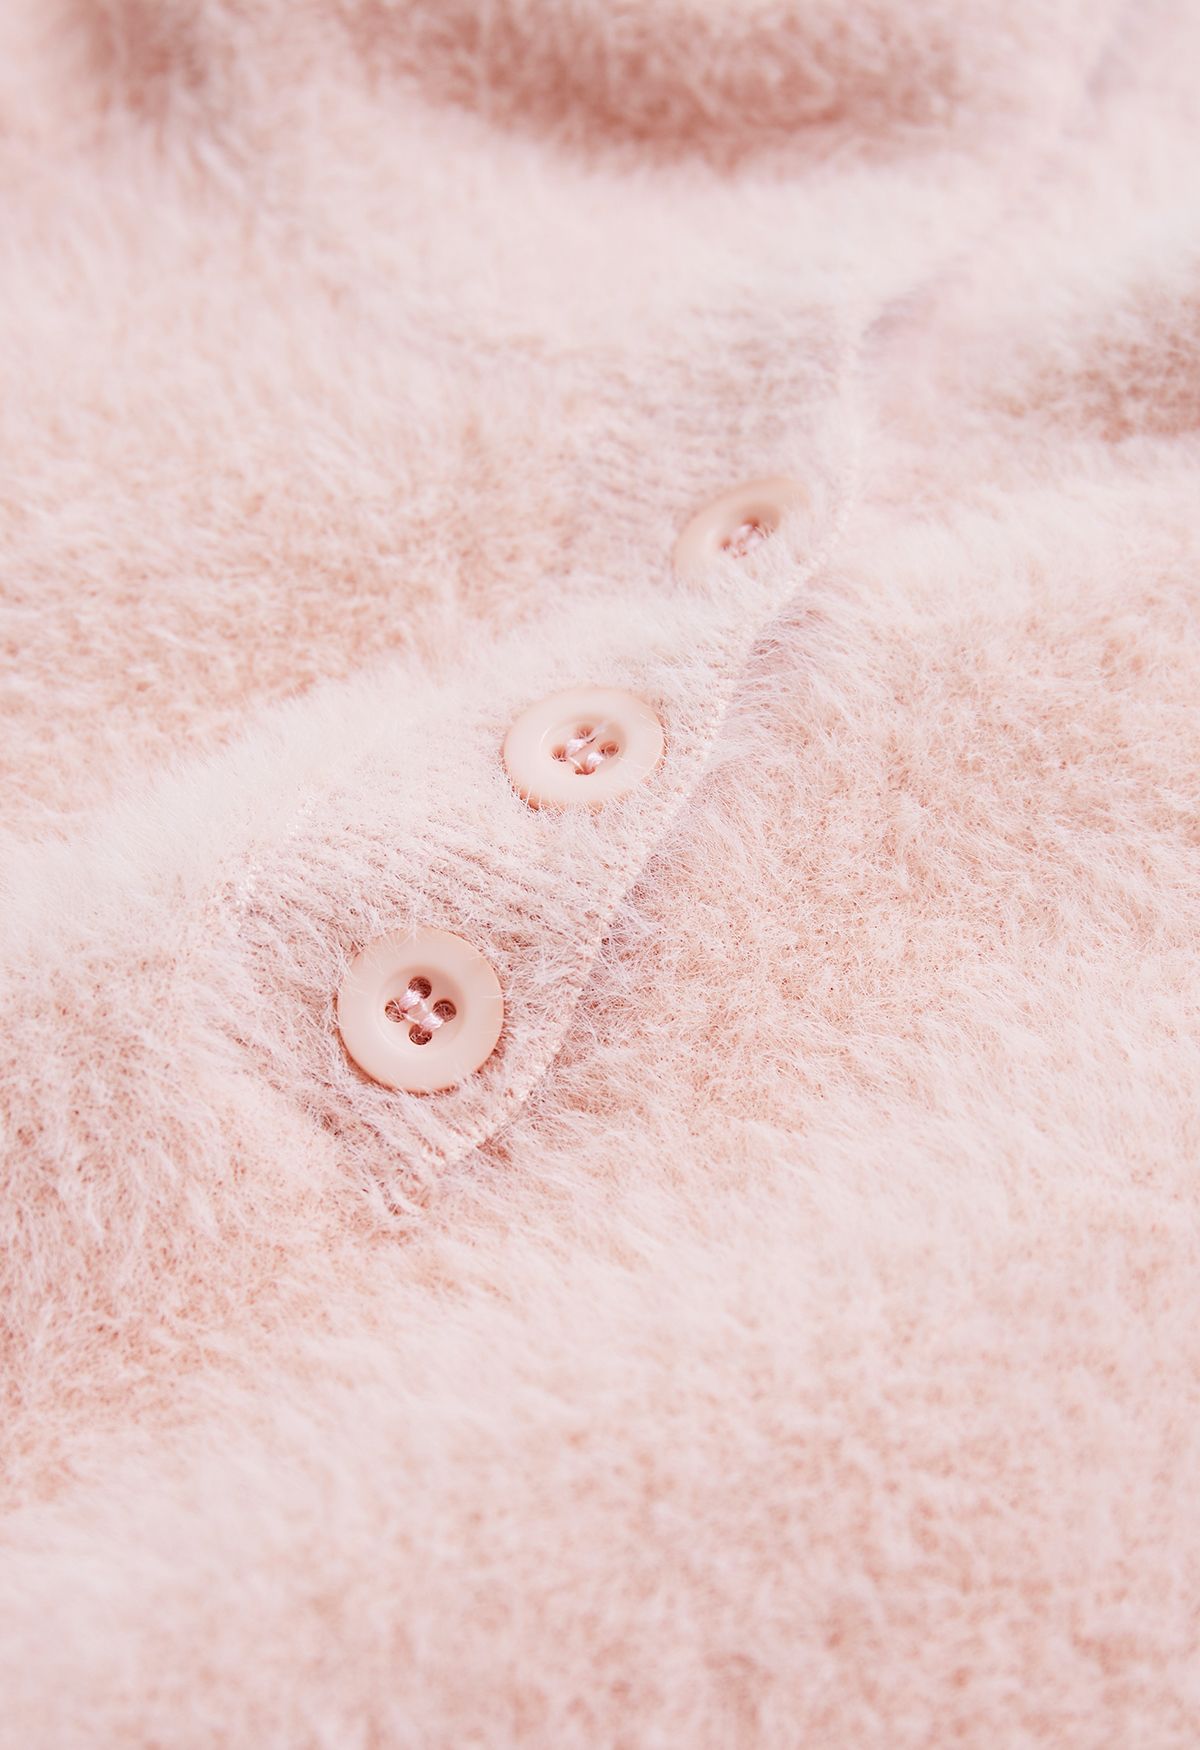 Suéter de malha com capuz Kitty Cat Fuzzy em rosa para crianças